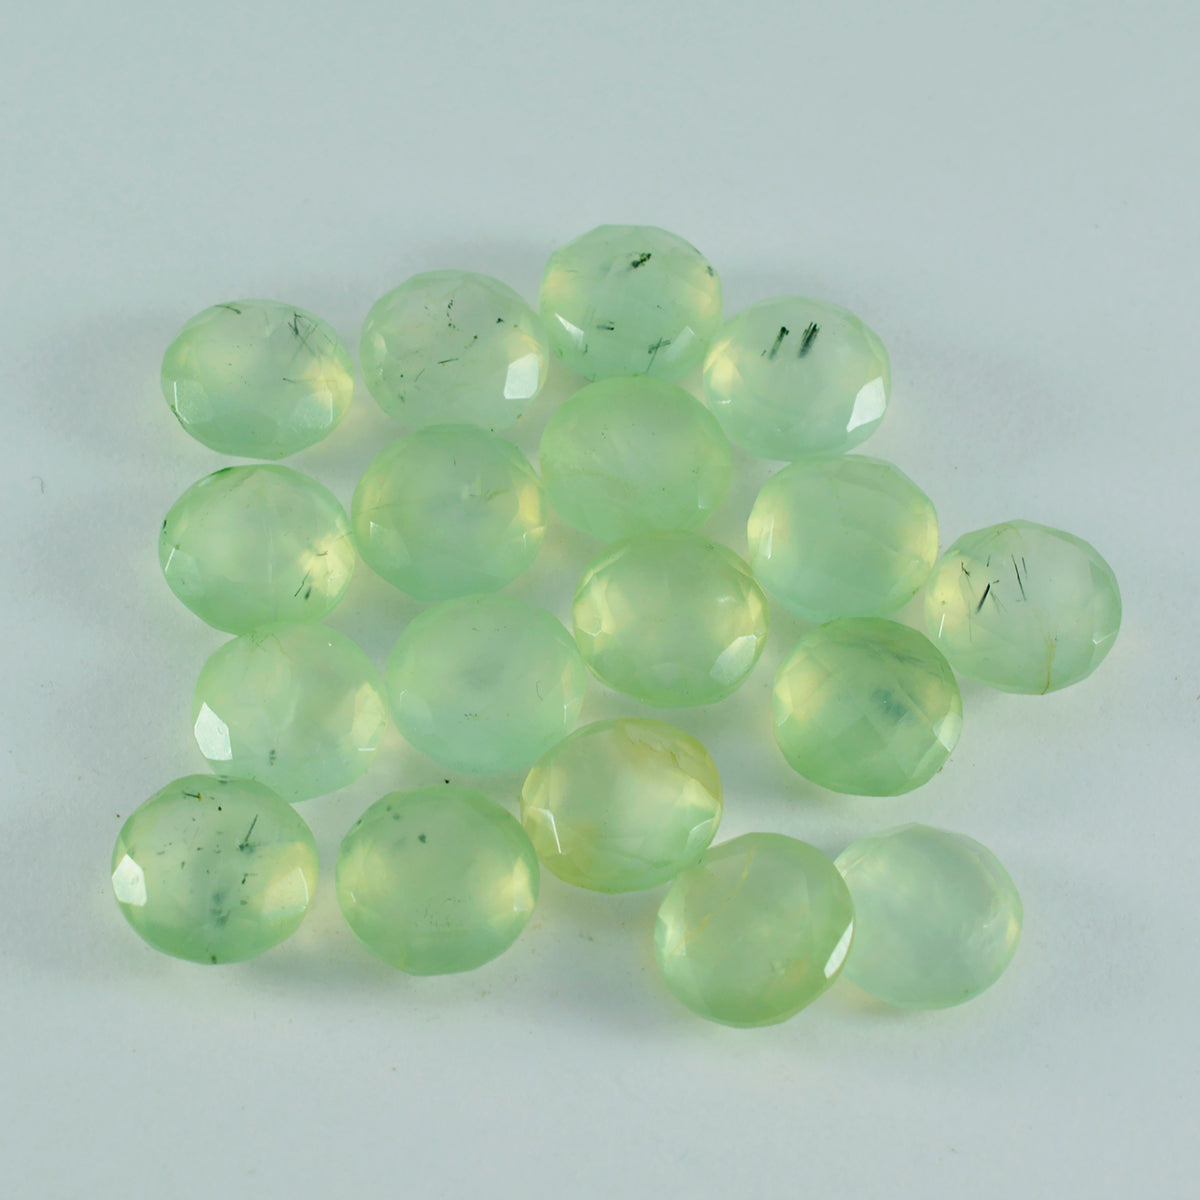 riyogems 1шт зеленый пренит ограненный 7x7 мм круглая форма качественный сыпучий драгоценный камень